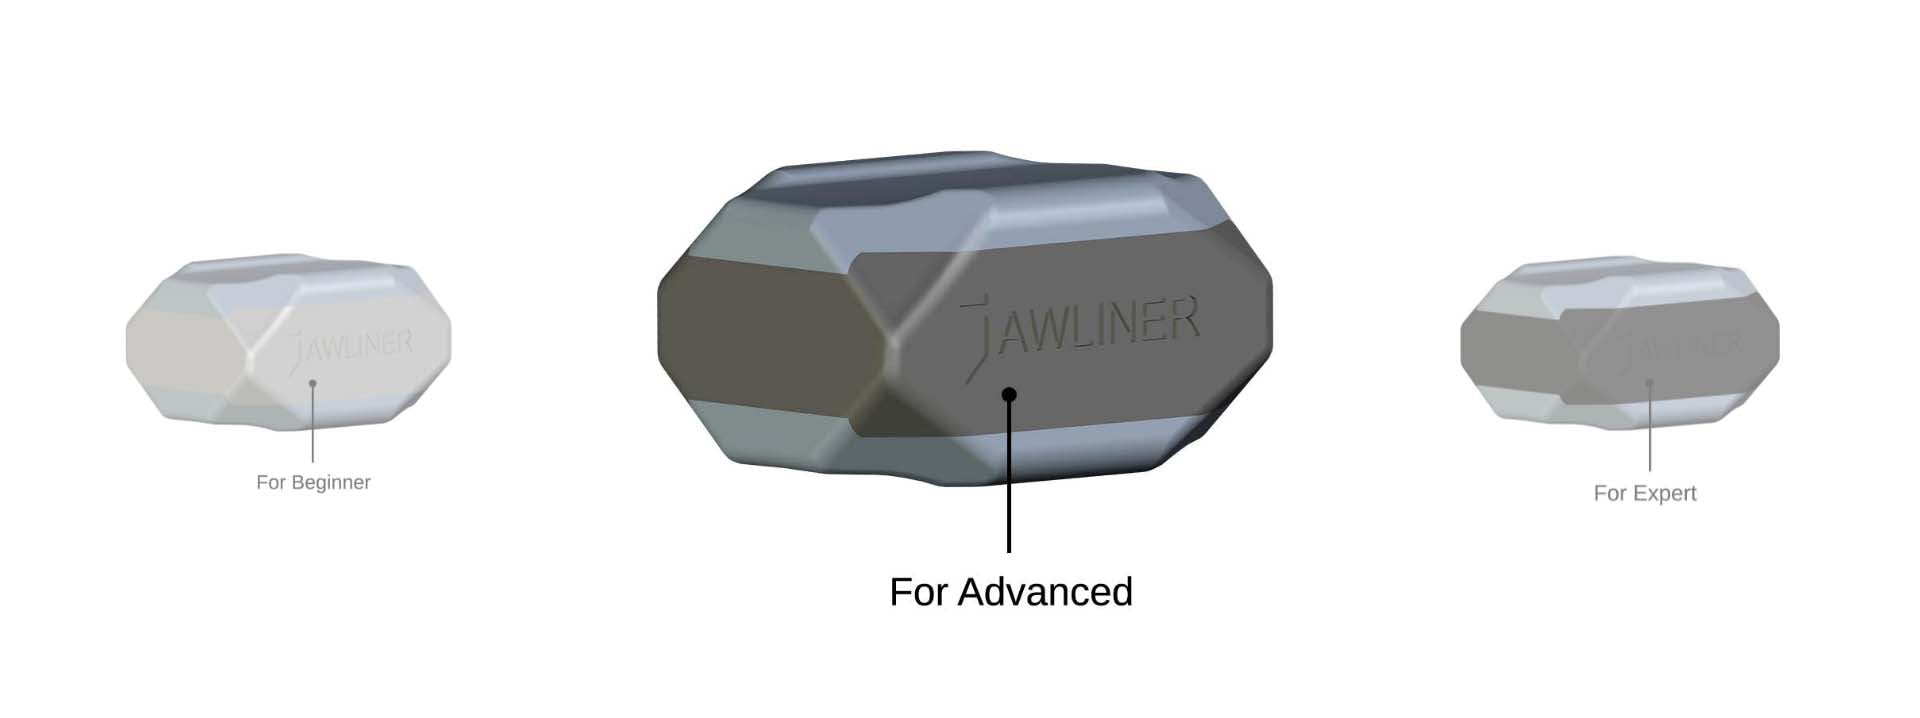 Pack complet JAWLINER® 3.0